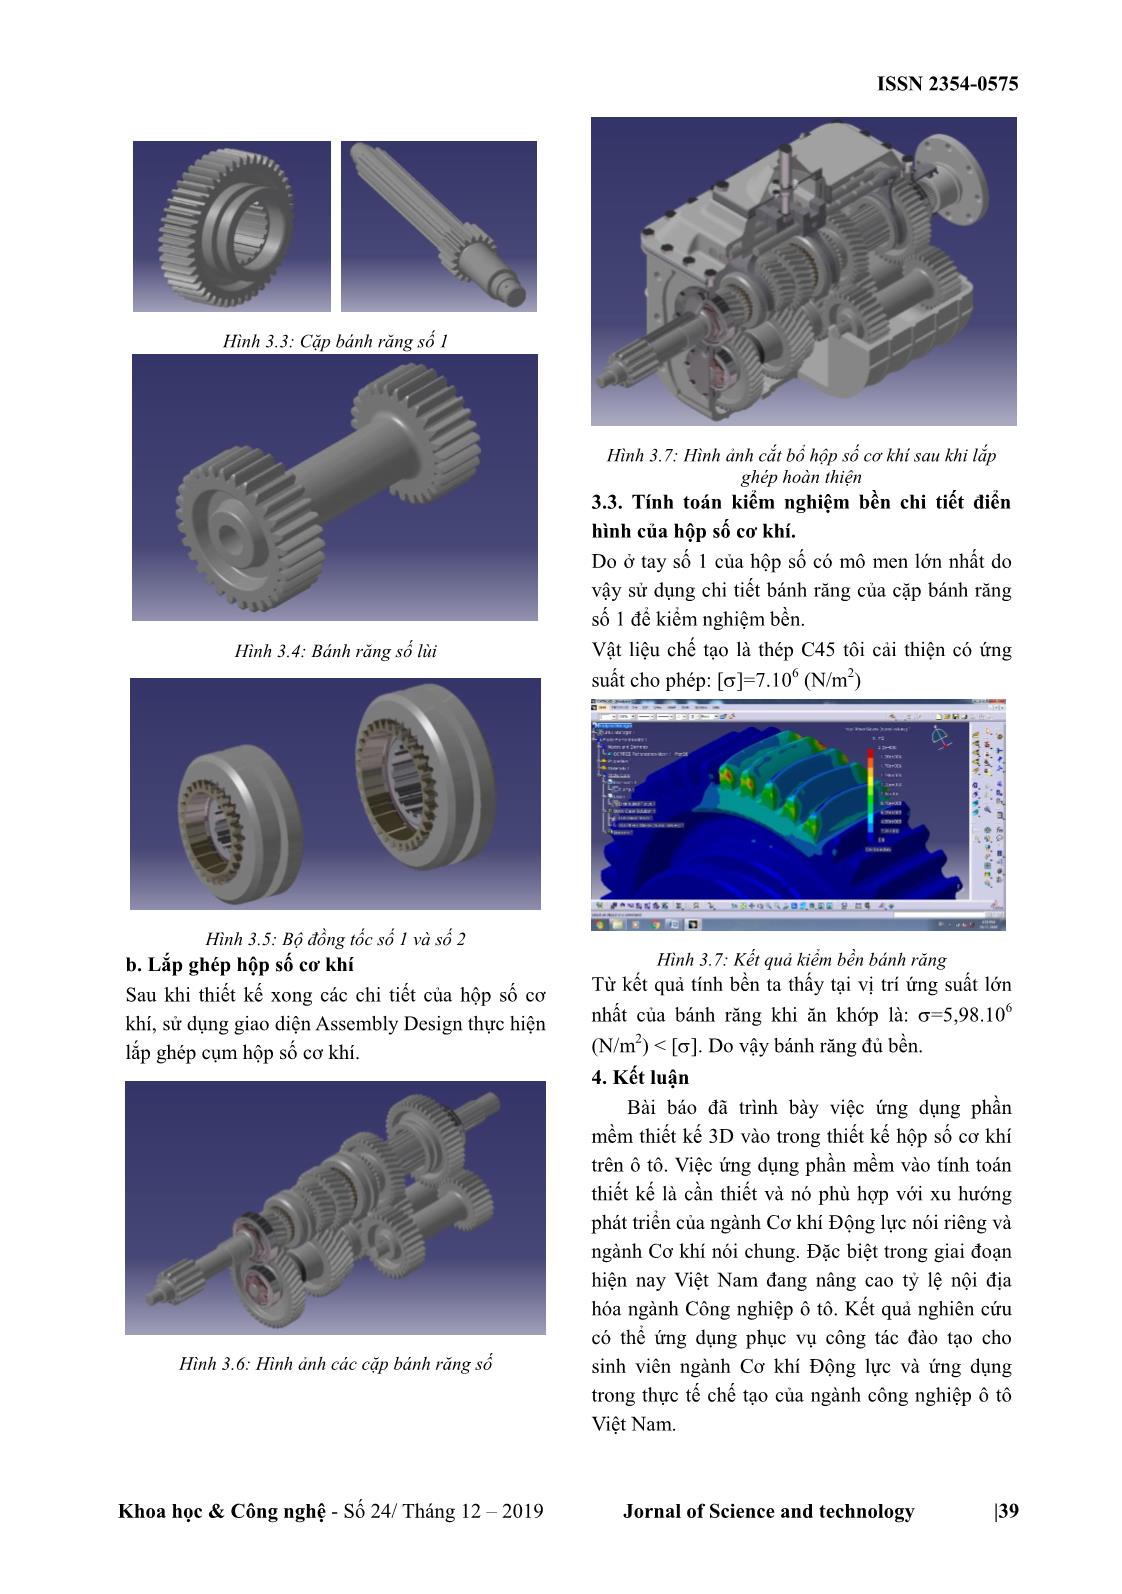 Ứng dụng phần mềm Catia V5 thiết kế hộp số cơ khí trên ô tô trang 4